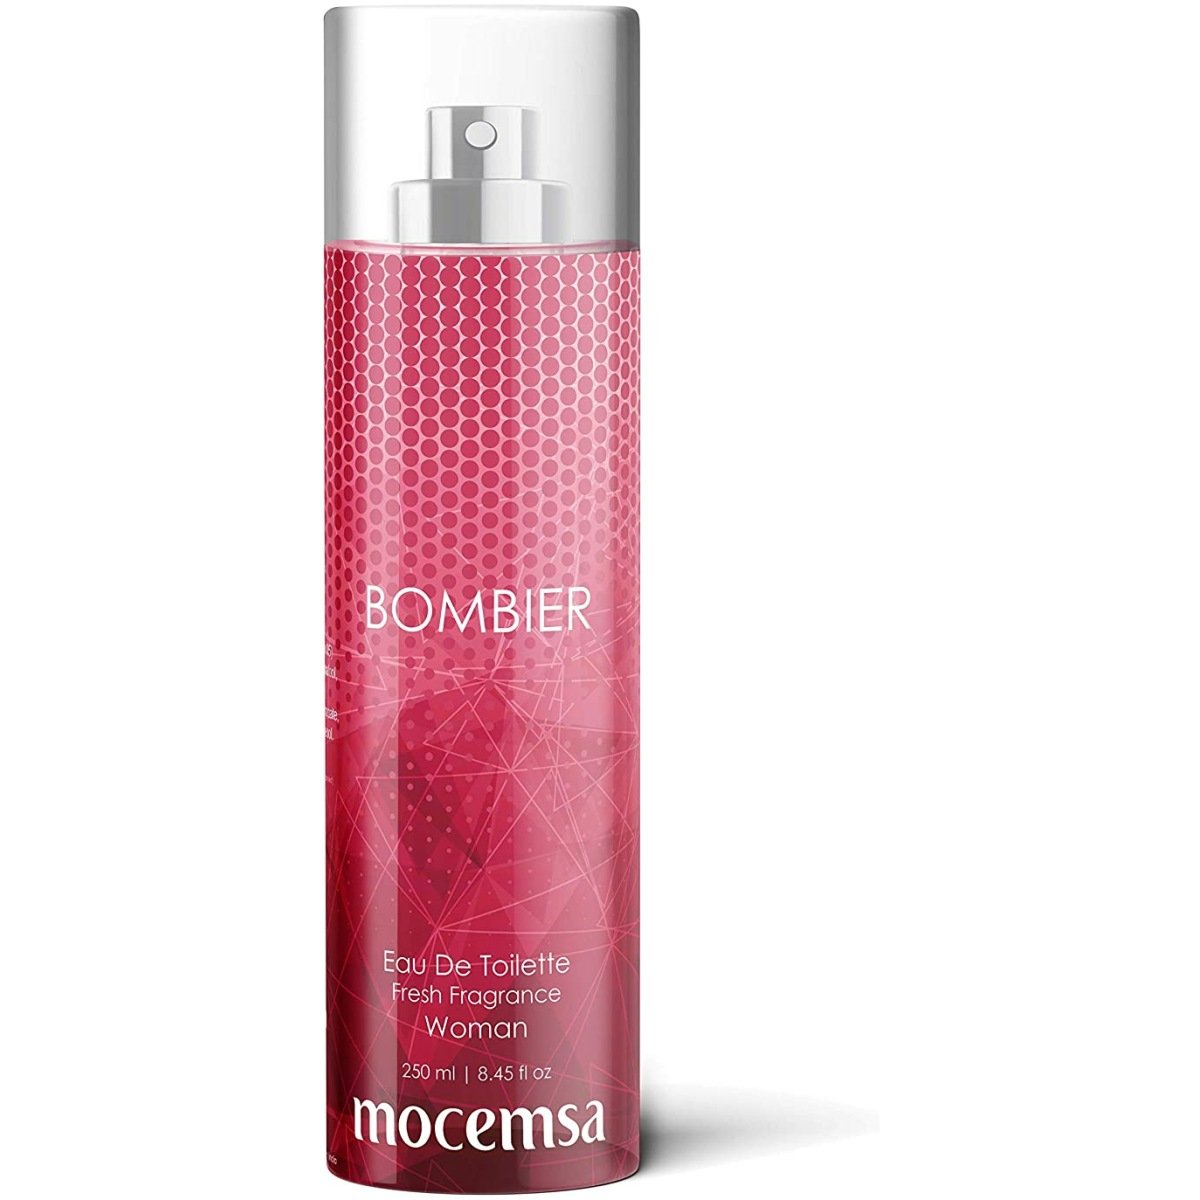 Mocemsa Bombier Pink EDT Perfume For Women 250 ml